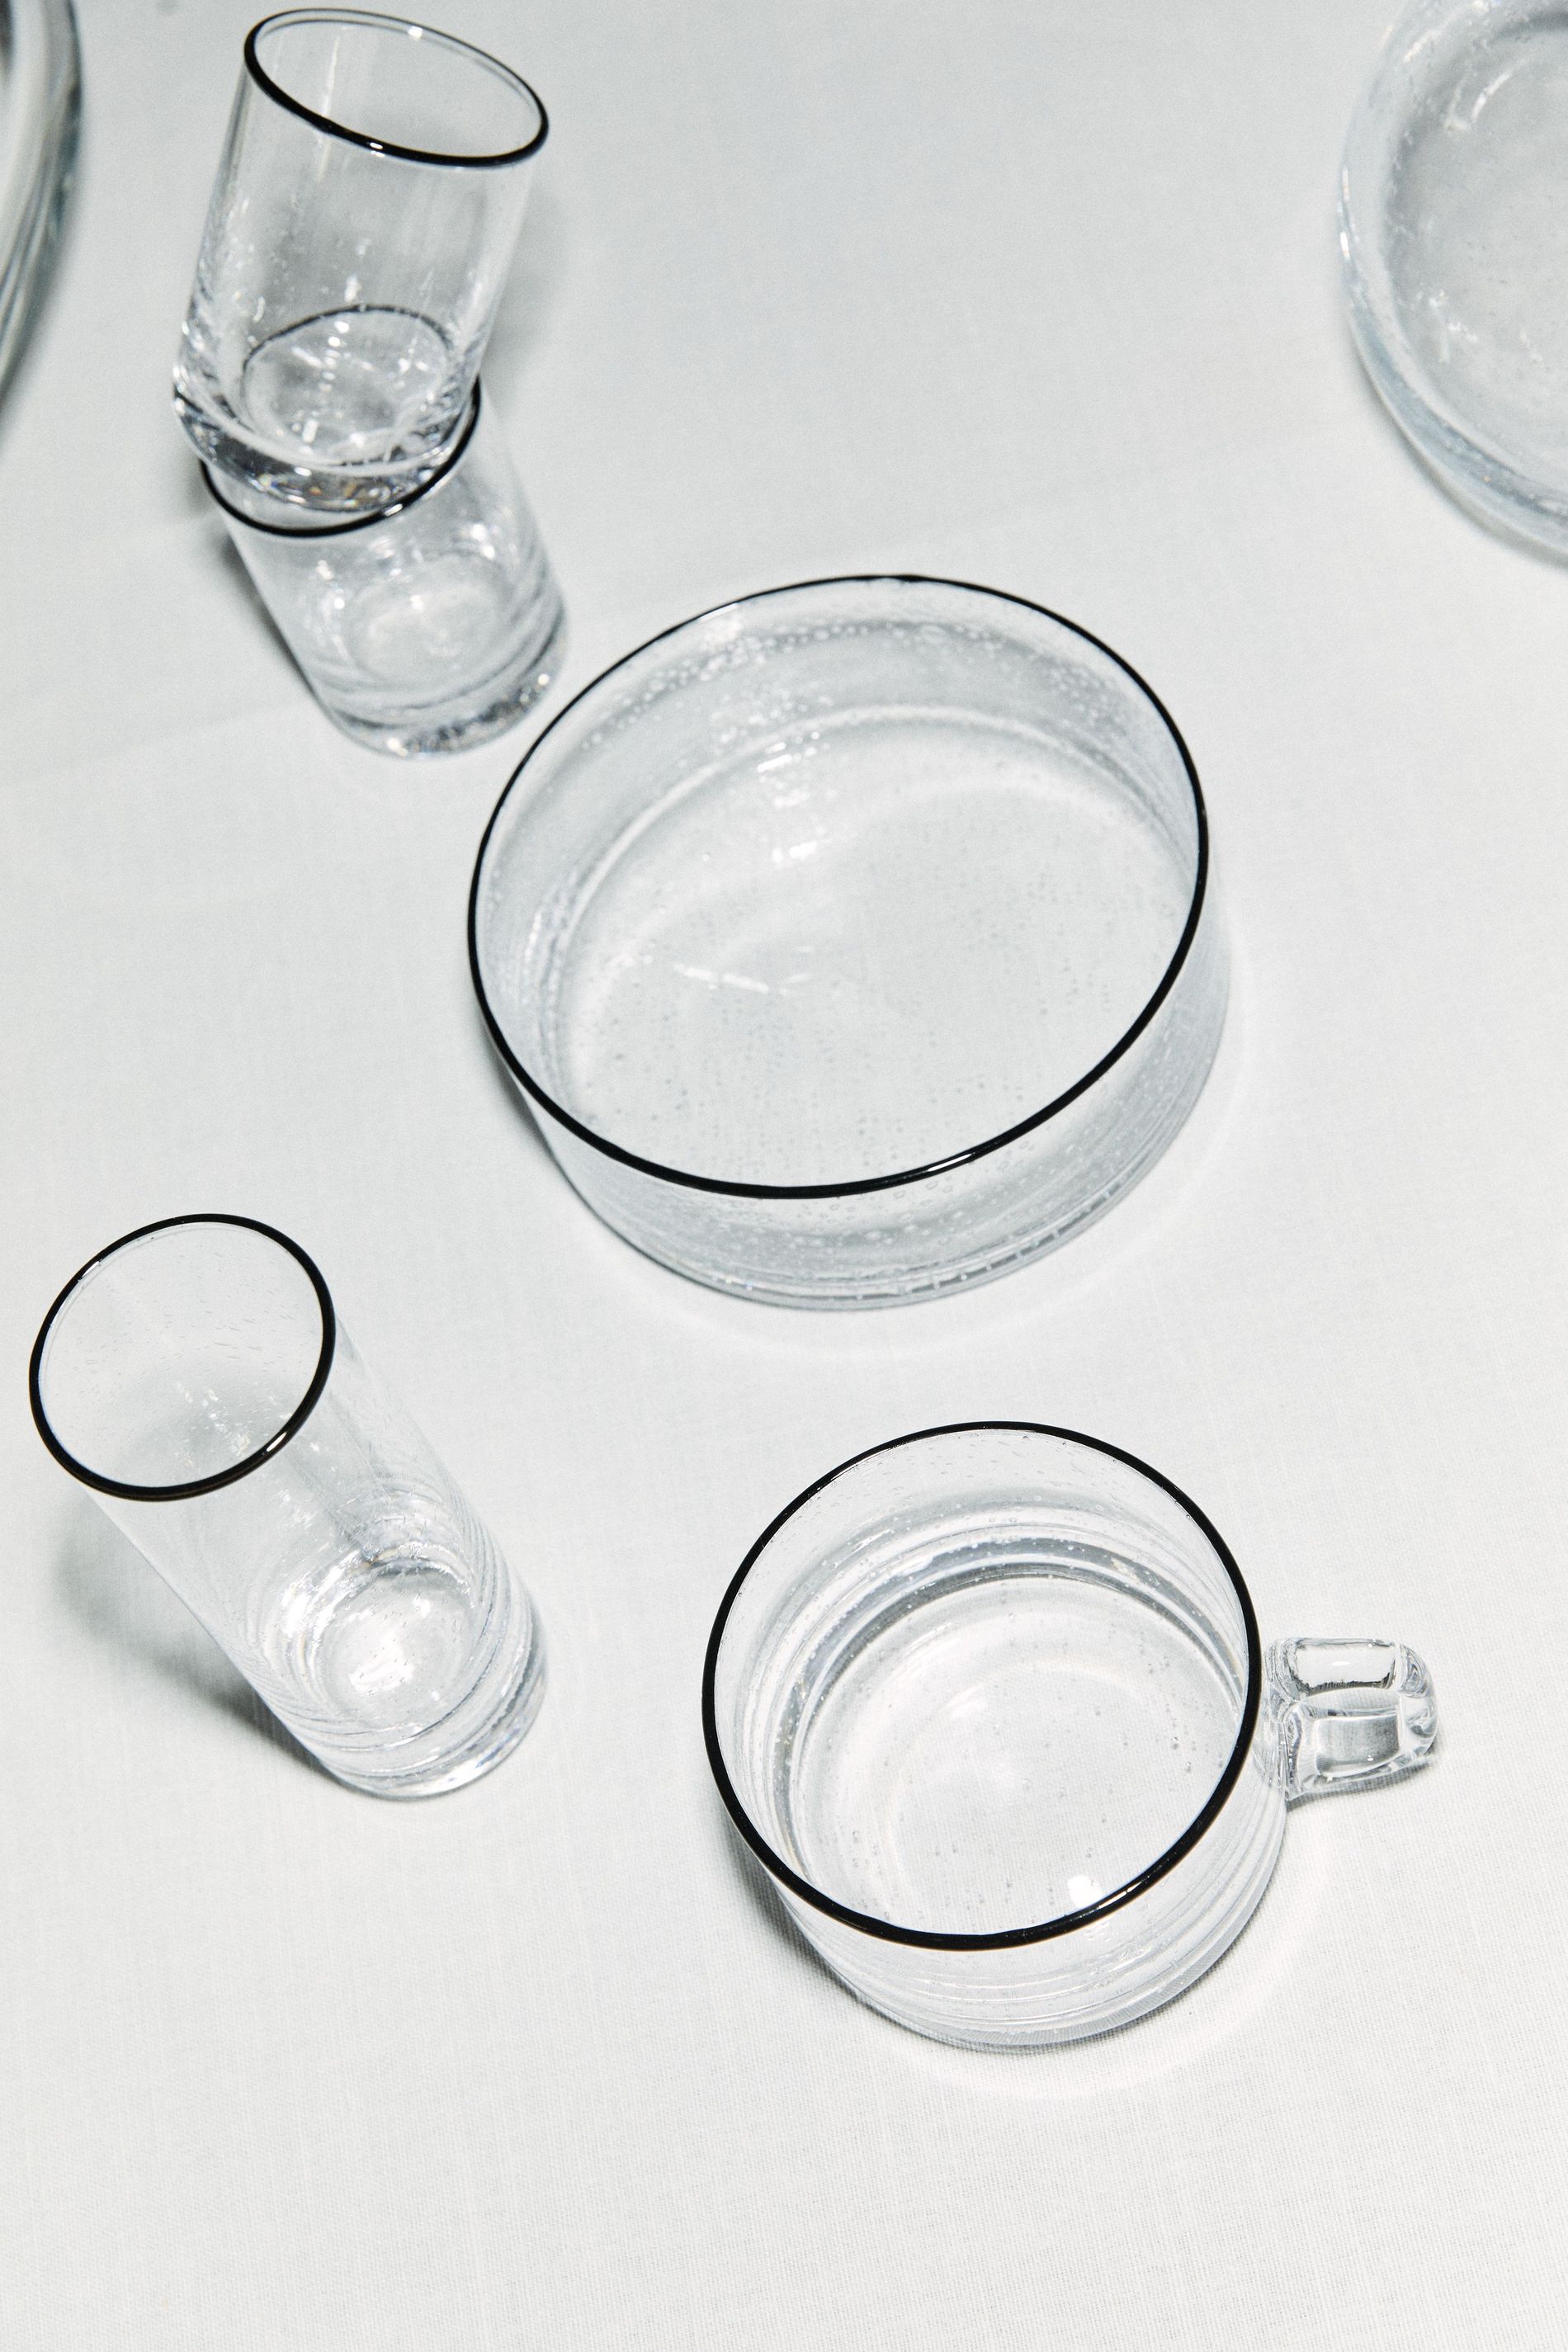 Glassware from Sophia Roe's interior collaboration,